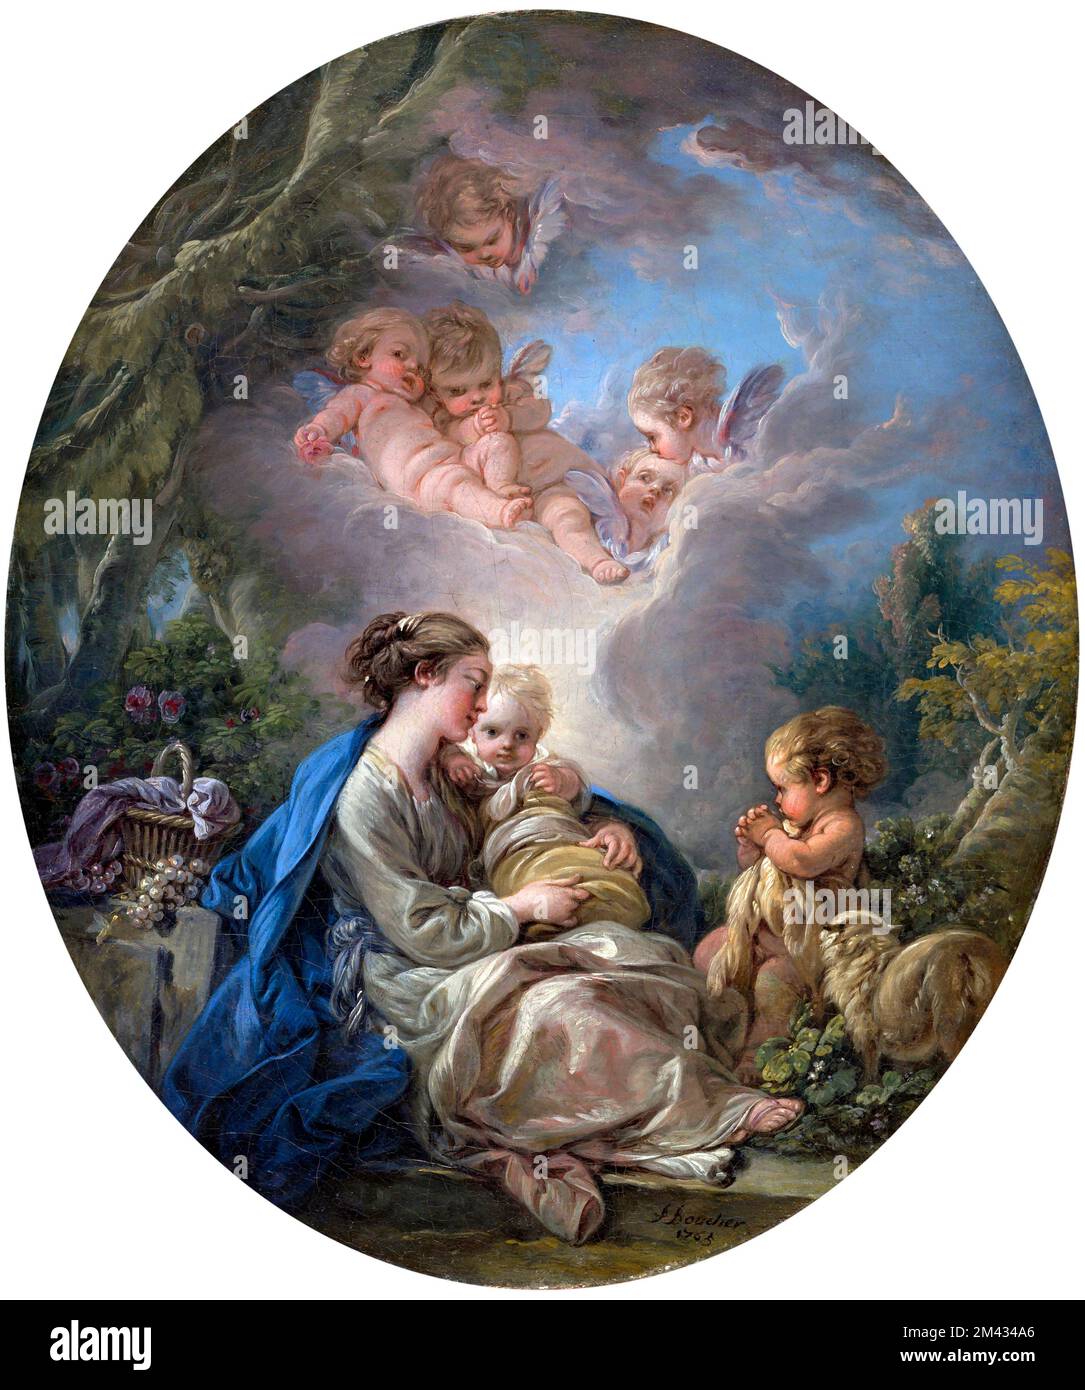 La Vierge à l'enfant avec les jeunes Saint-Jean-Baptiste et Anges par François Boucher (1703-1770), huile sur toile, 1765 Banque D'Images